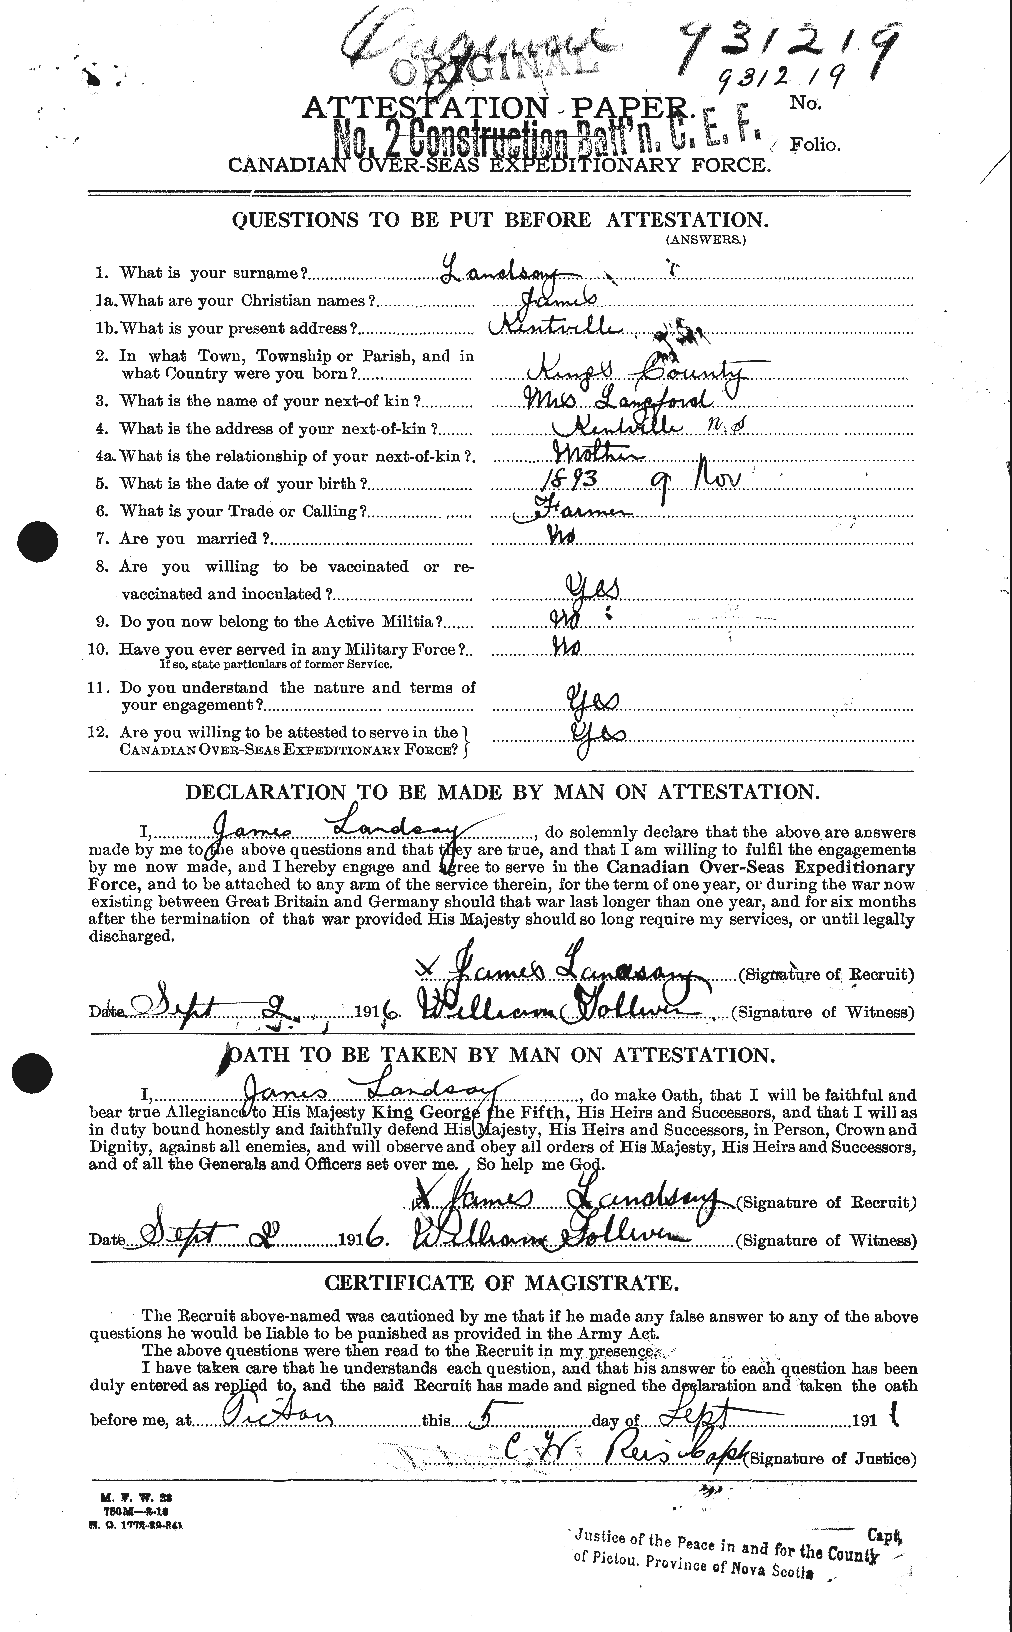 Dossiers du Personnel de la Première Guerre mondiale - CEC 447435a